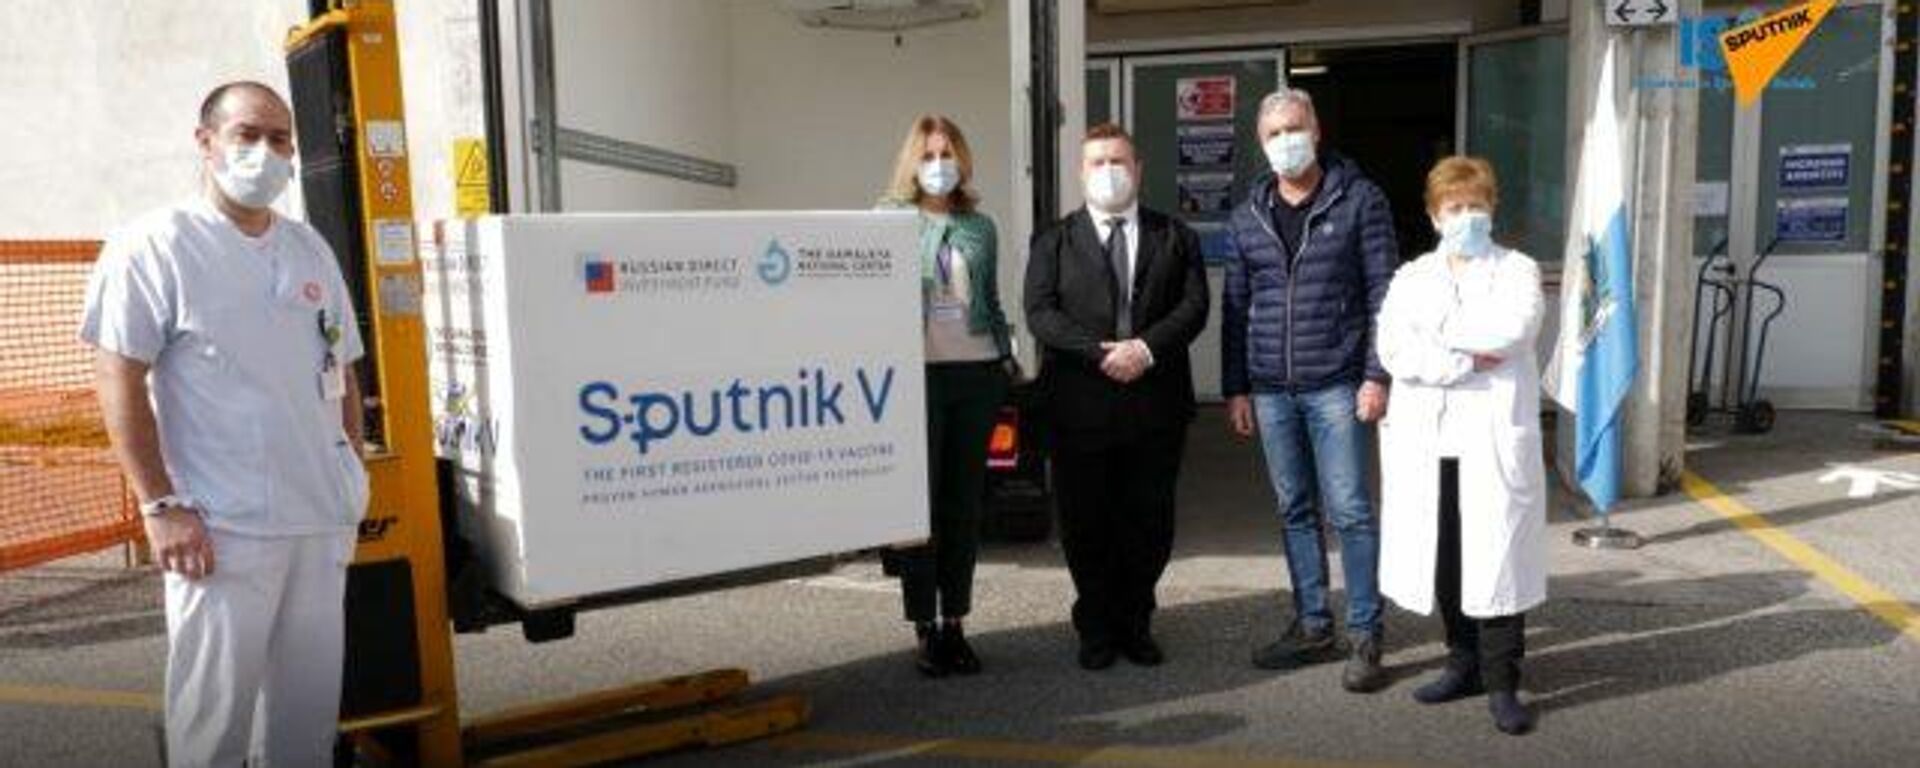 San Marino empieza la campaña de vacunación con la Sputnik V - Sputnik Mundo, 1920, 25.02.2021